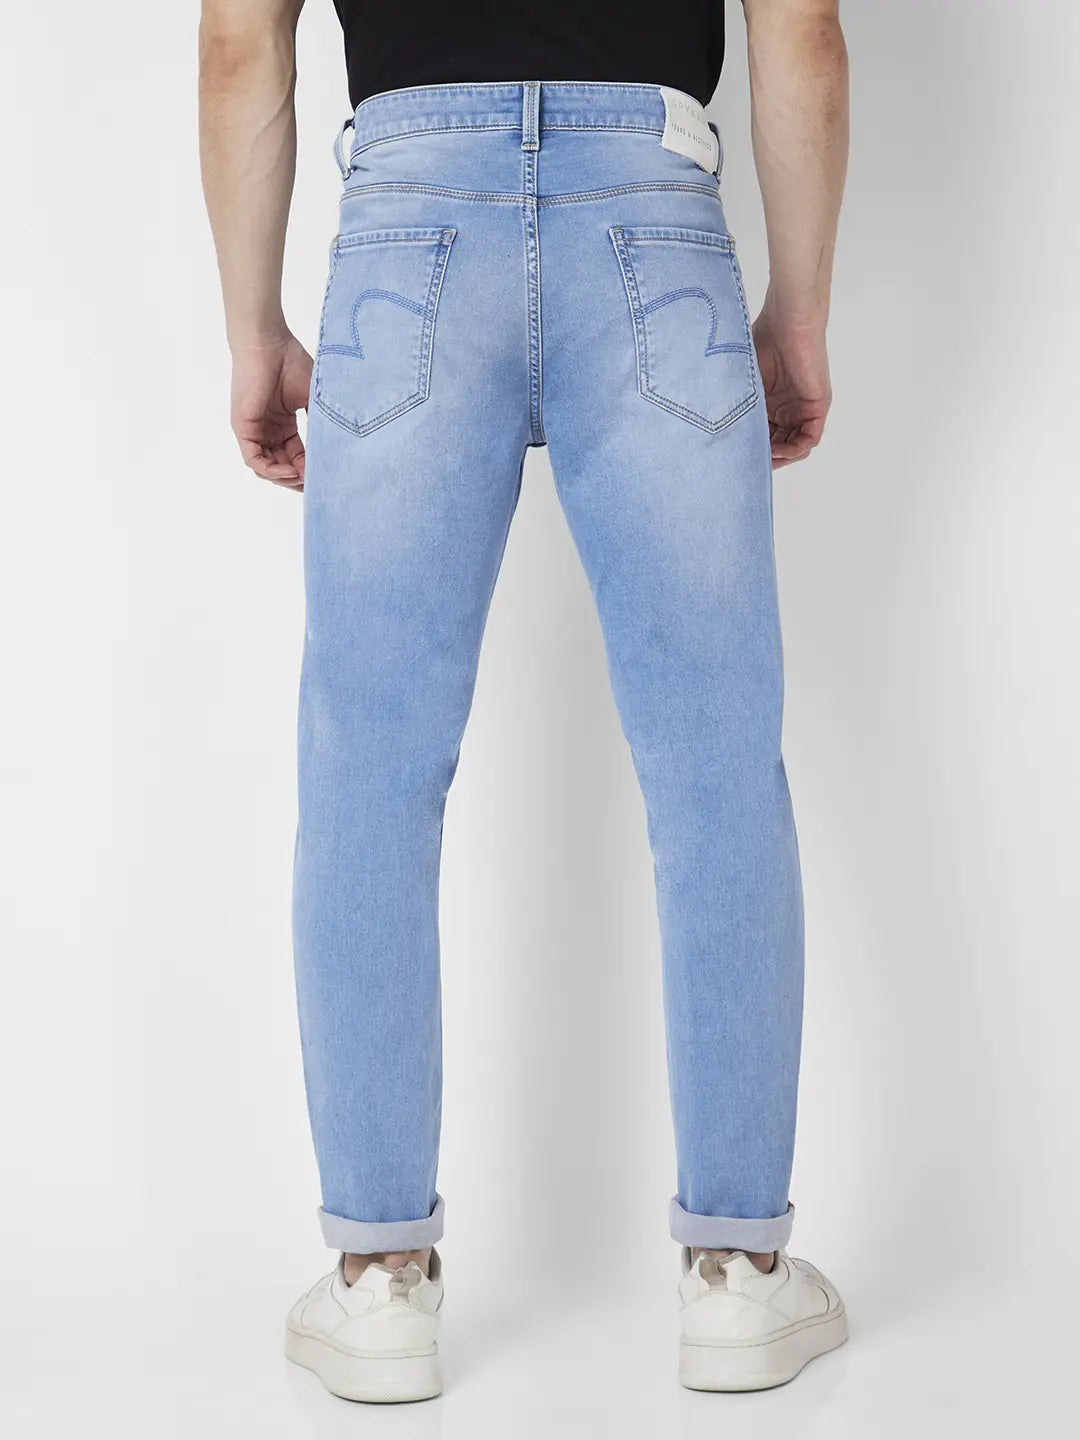 Buy Men Light Blue Cotton Stretch Slim Fit Jeans @ Rs4,299